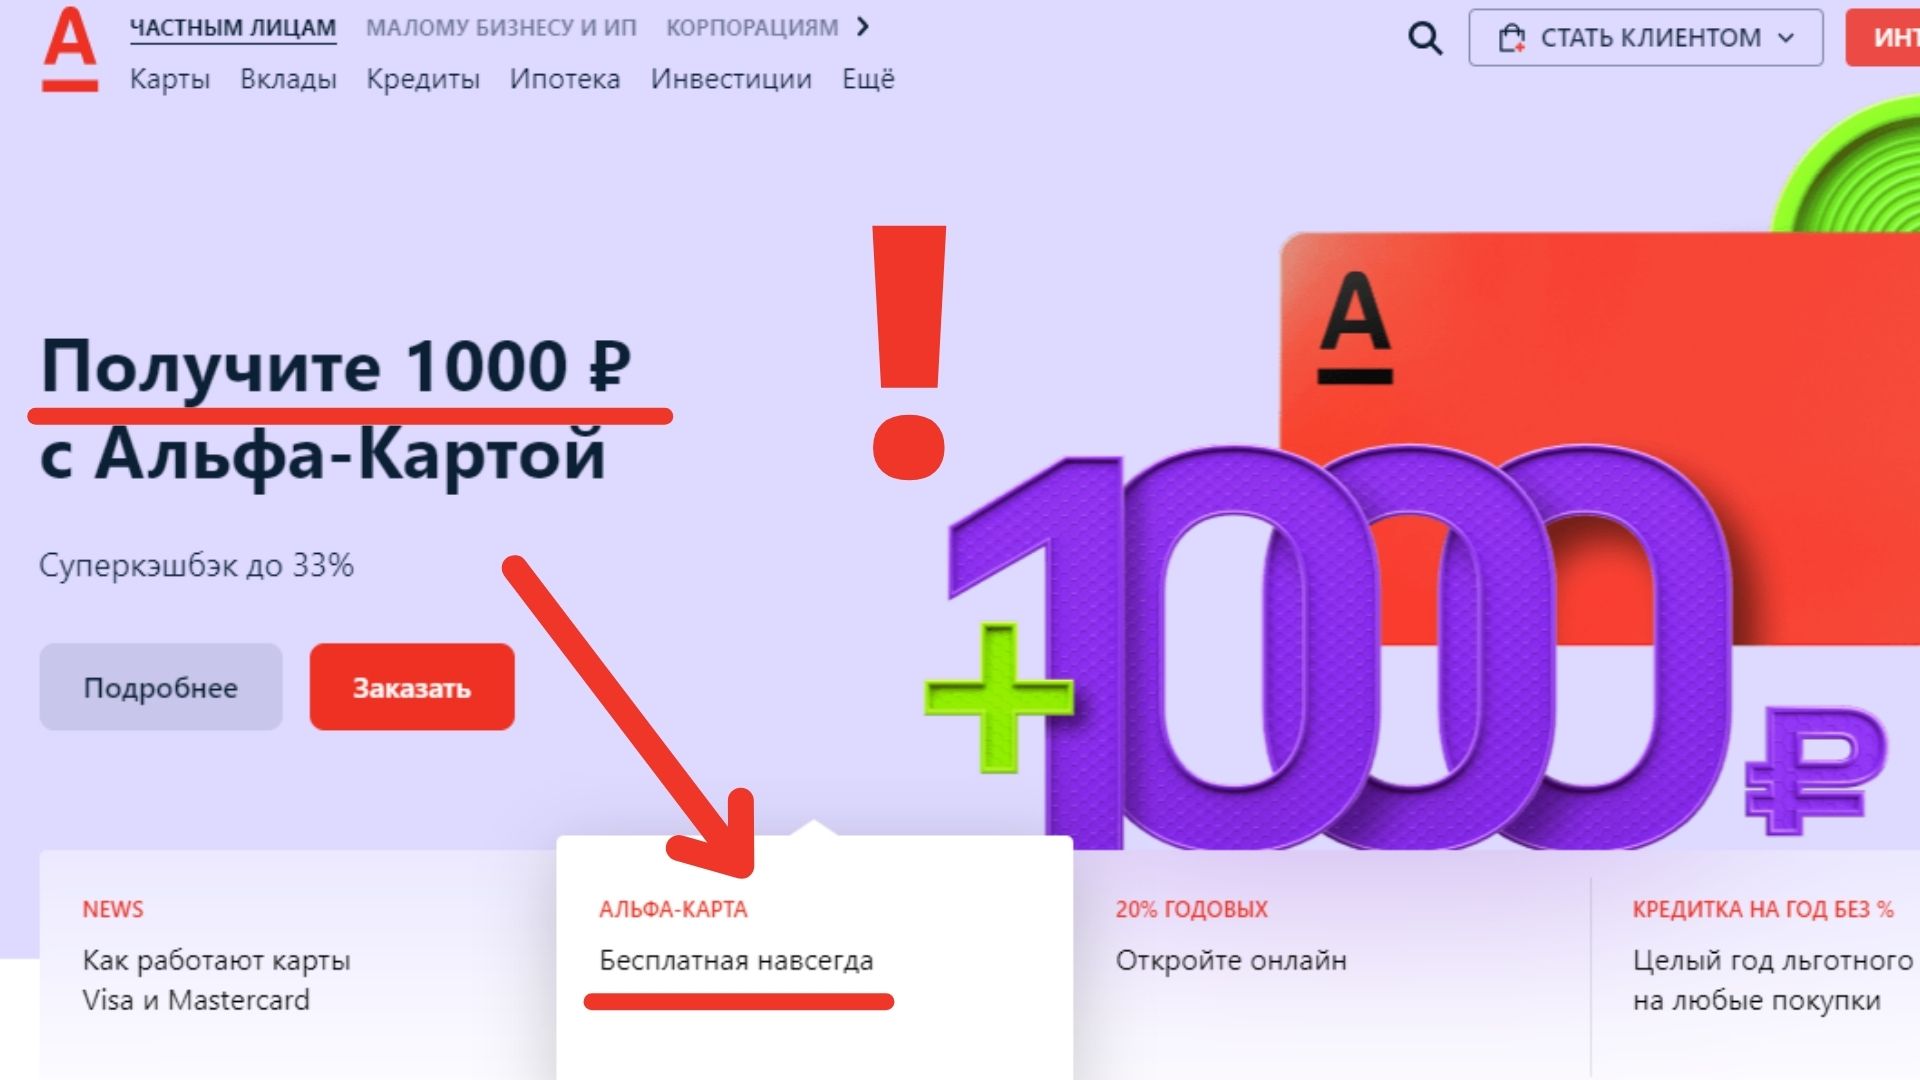 Получите 1000 Тысячу рублей с Альфа - картой. Обзор условий Акции Альфа банка 2022